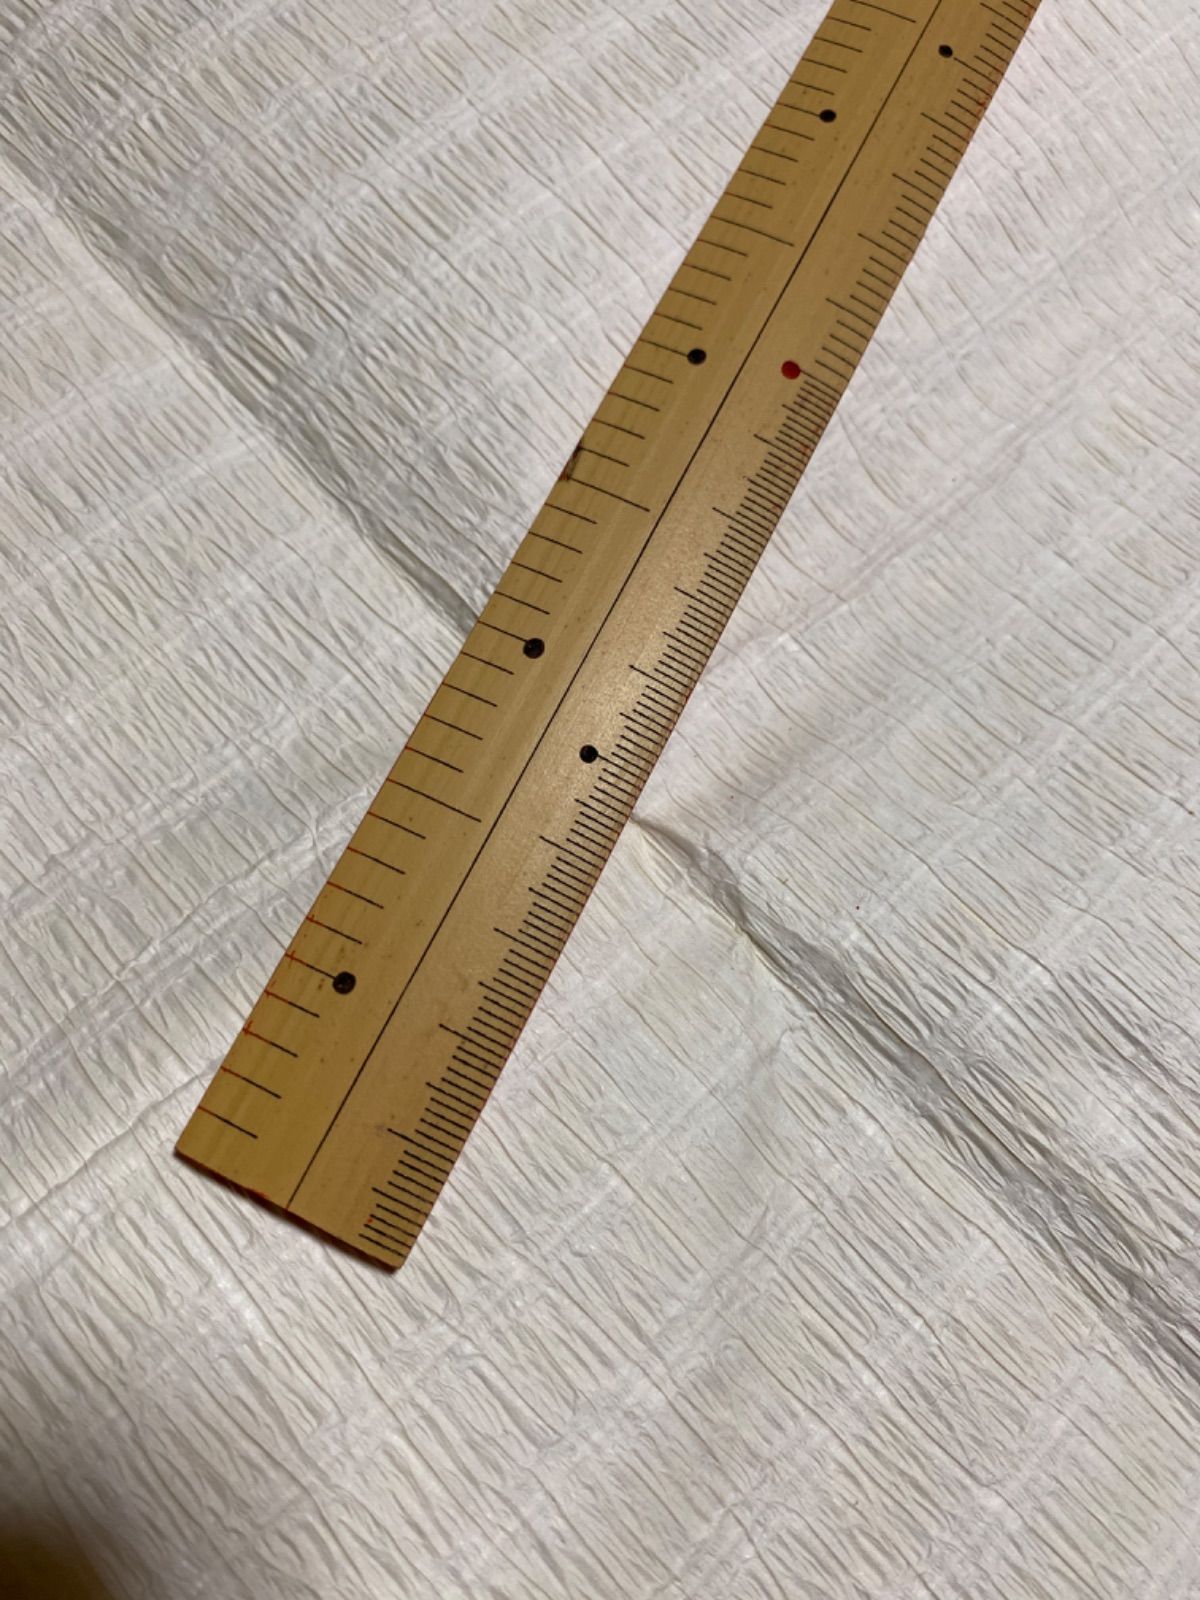 着物 尺・センチ対応ものさし 2尺・75cm 寸 cm付 竹製 定規 - その他